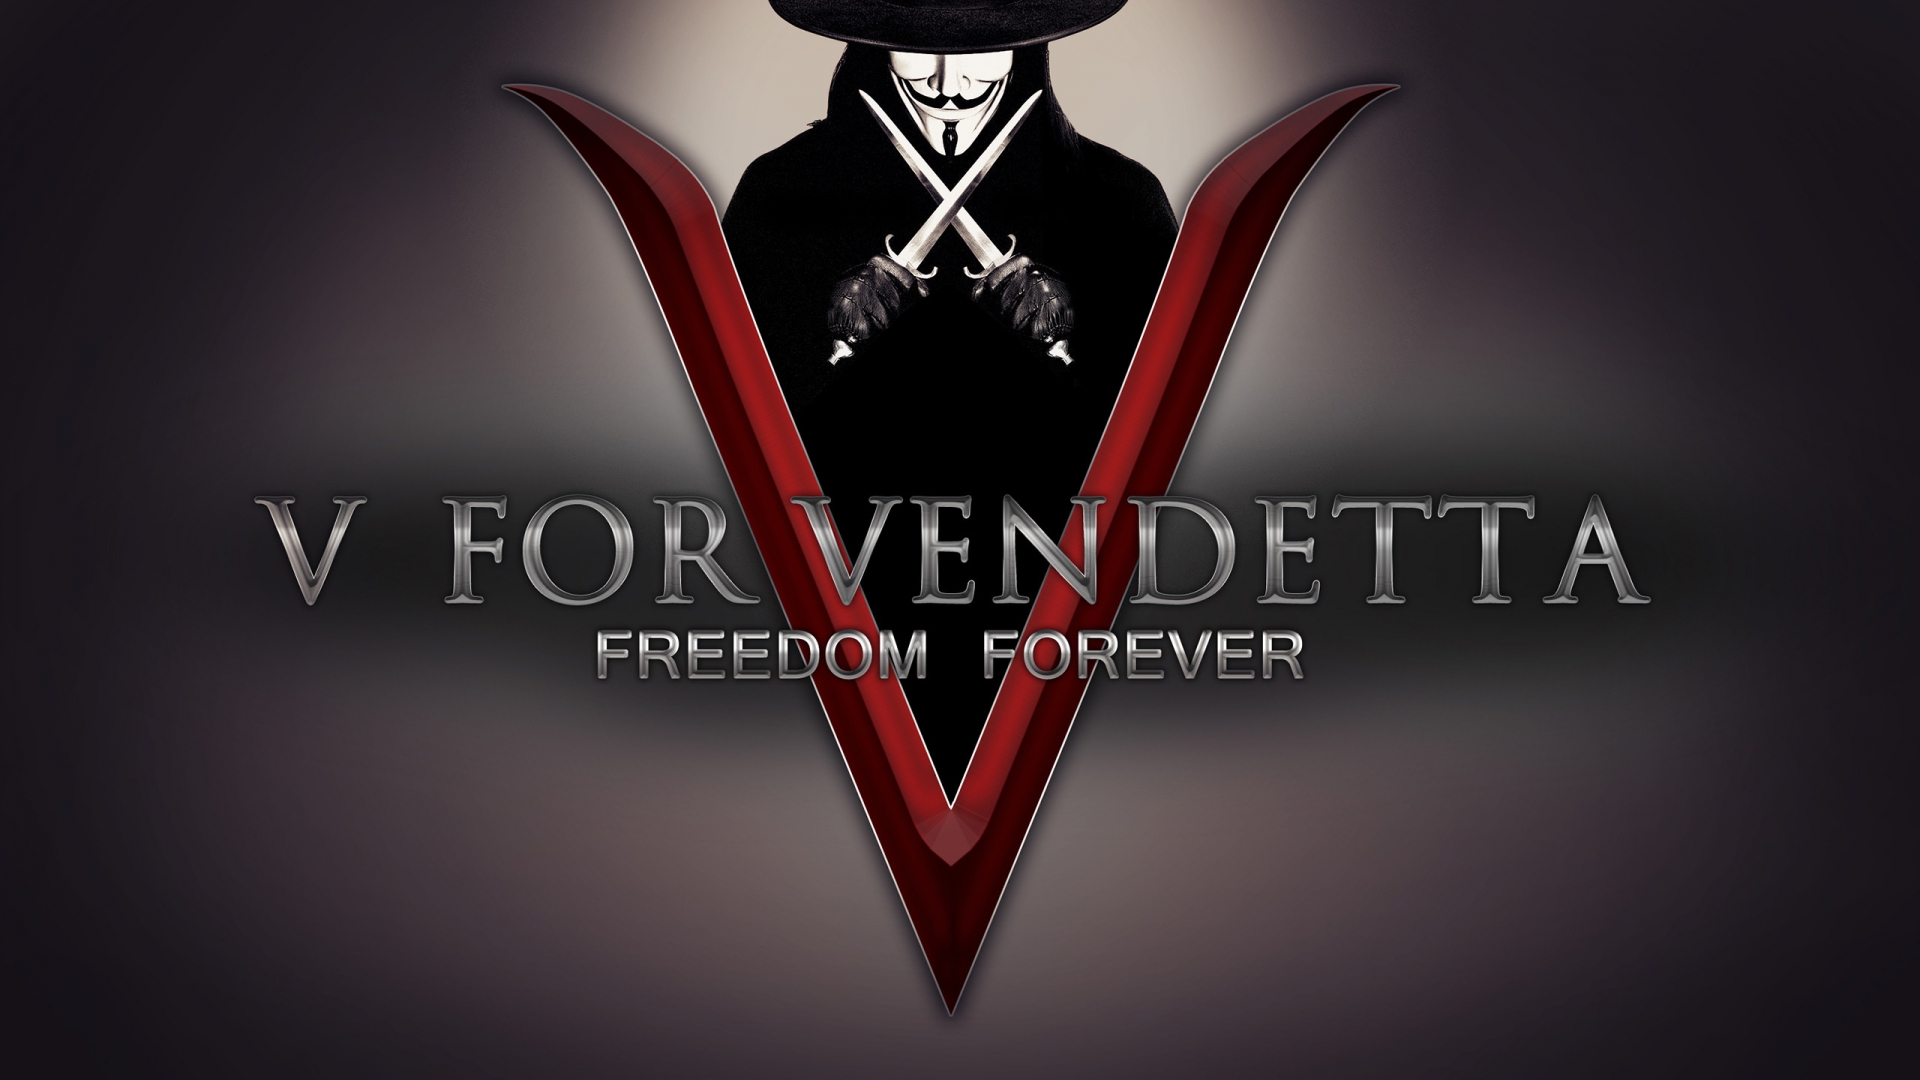 V for Vendetta Freedom Forever for 1920 x 1080 HDTV 1080p resolution